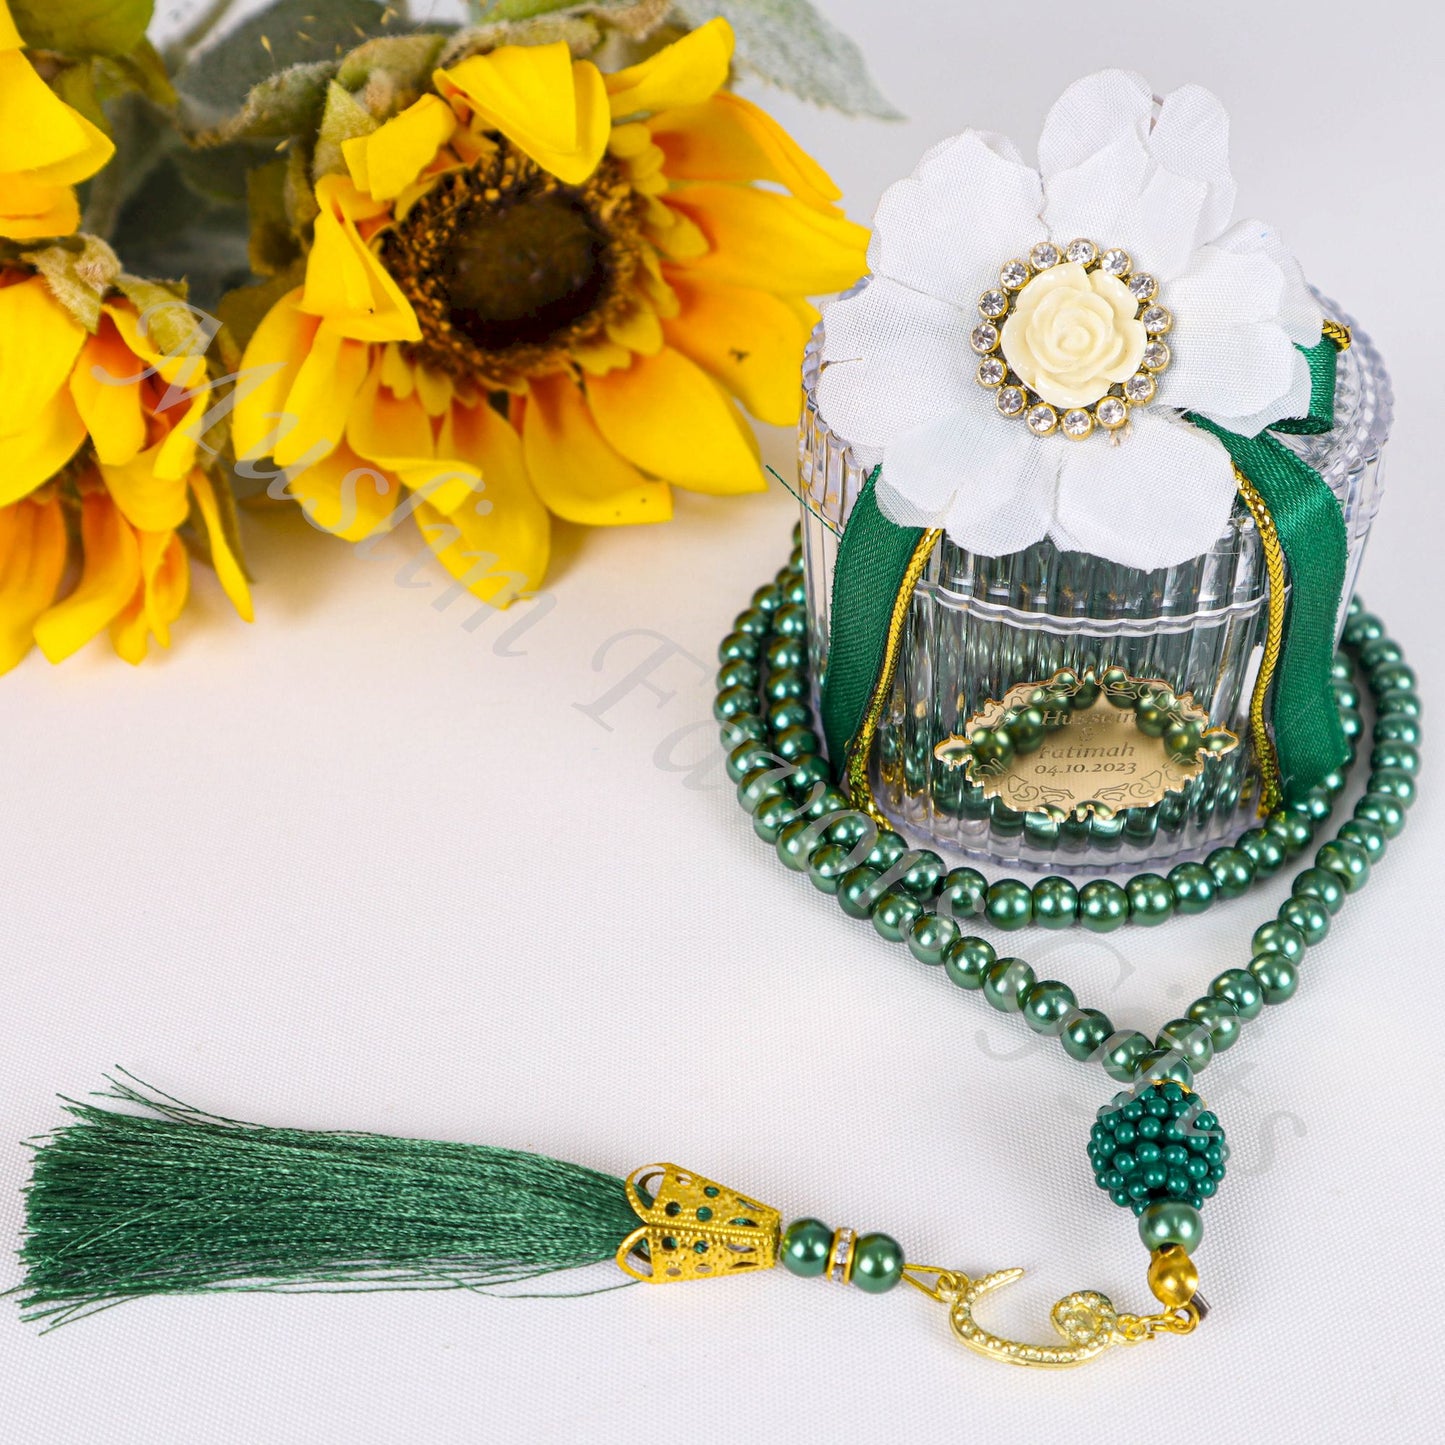 Personalized Prayer Beads Tasbeeh Islamic Wedding Baby Shower Gift